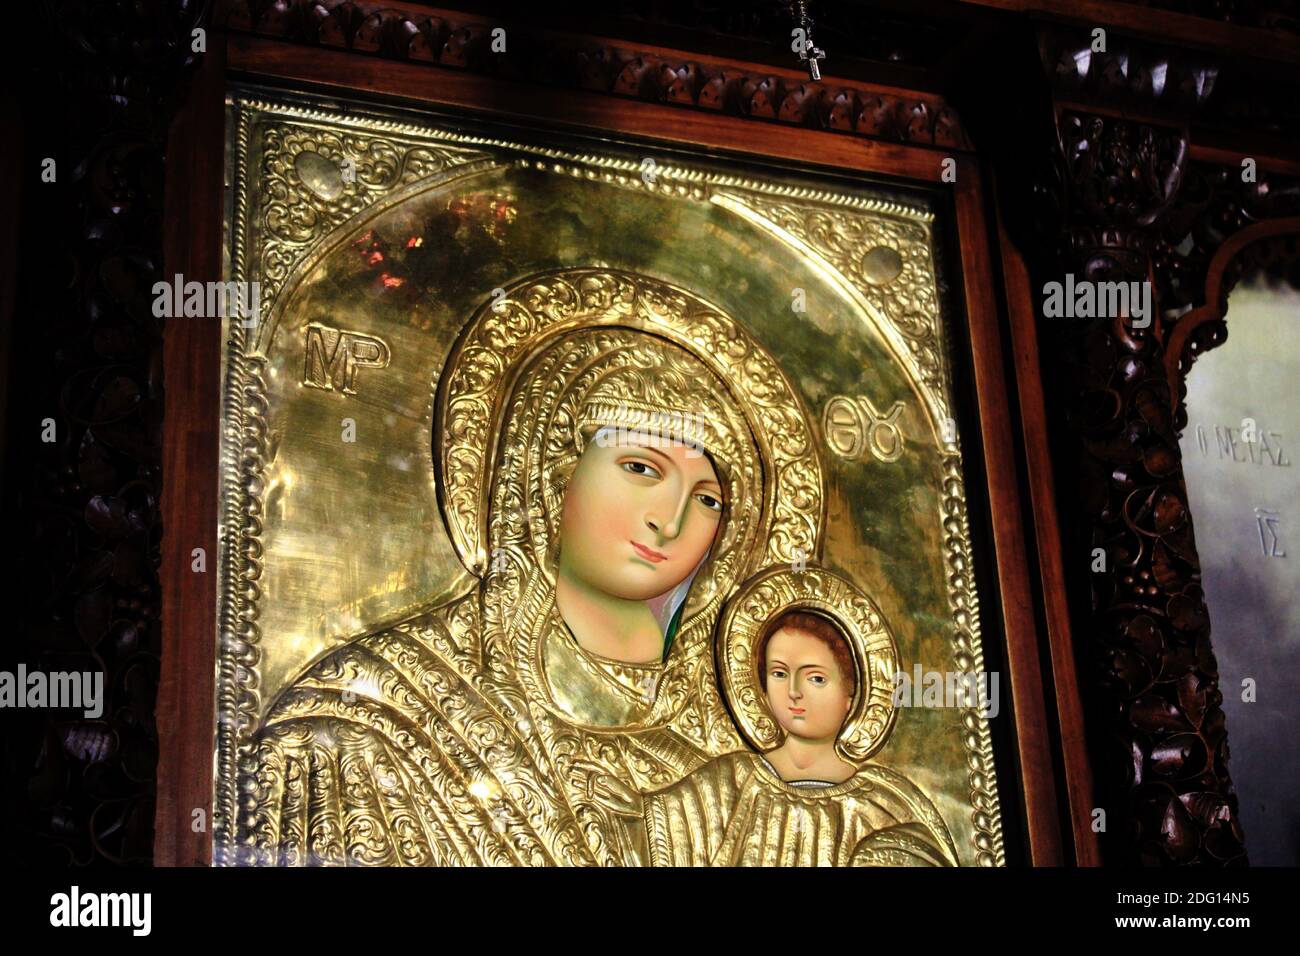 Icona greca ortodossa della Vergine Maria con Gesù Cristo. L'icona è realizzata a mano e ricoperta di oro - Atene, Grecia, marzo 12 2020. Foto Stock